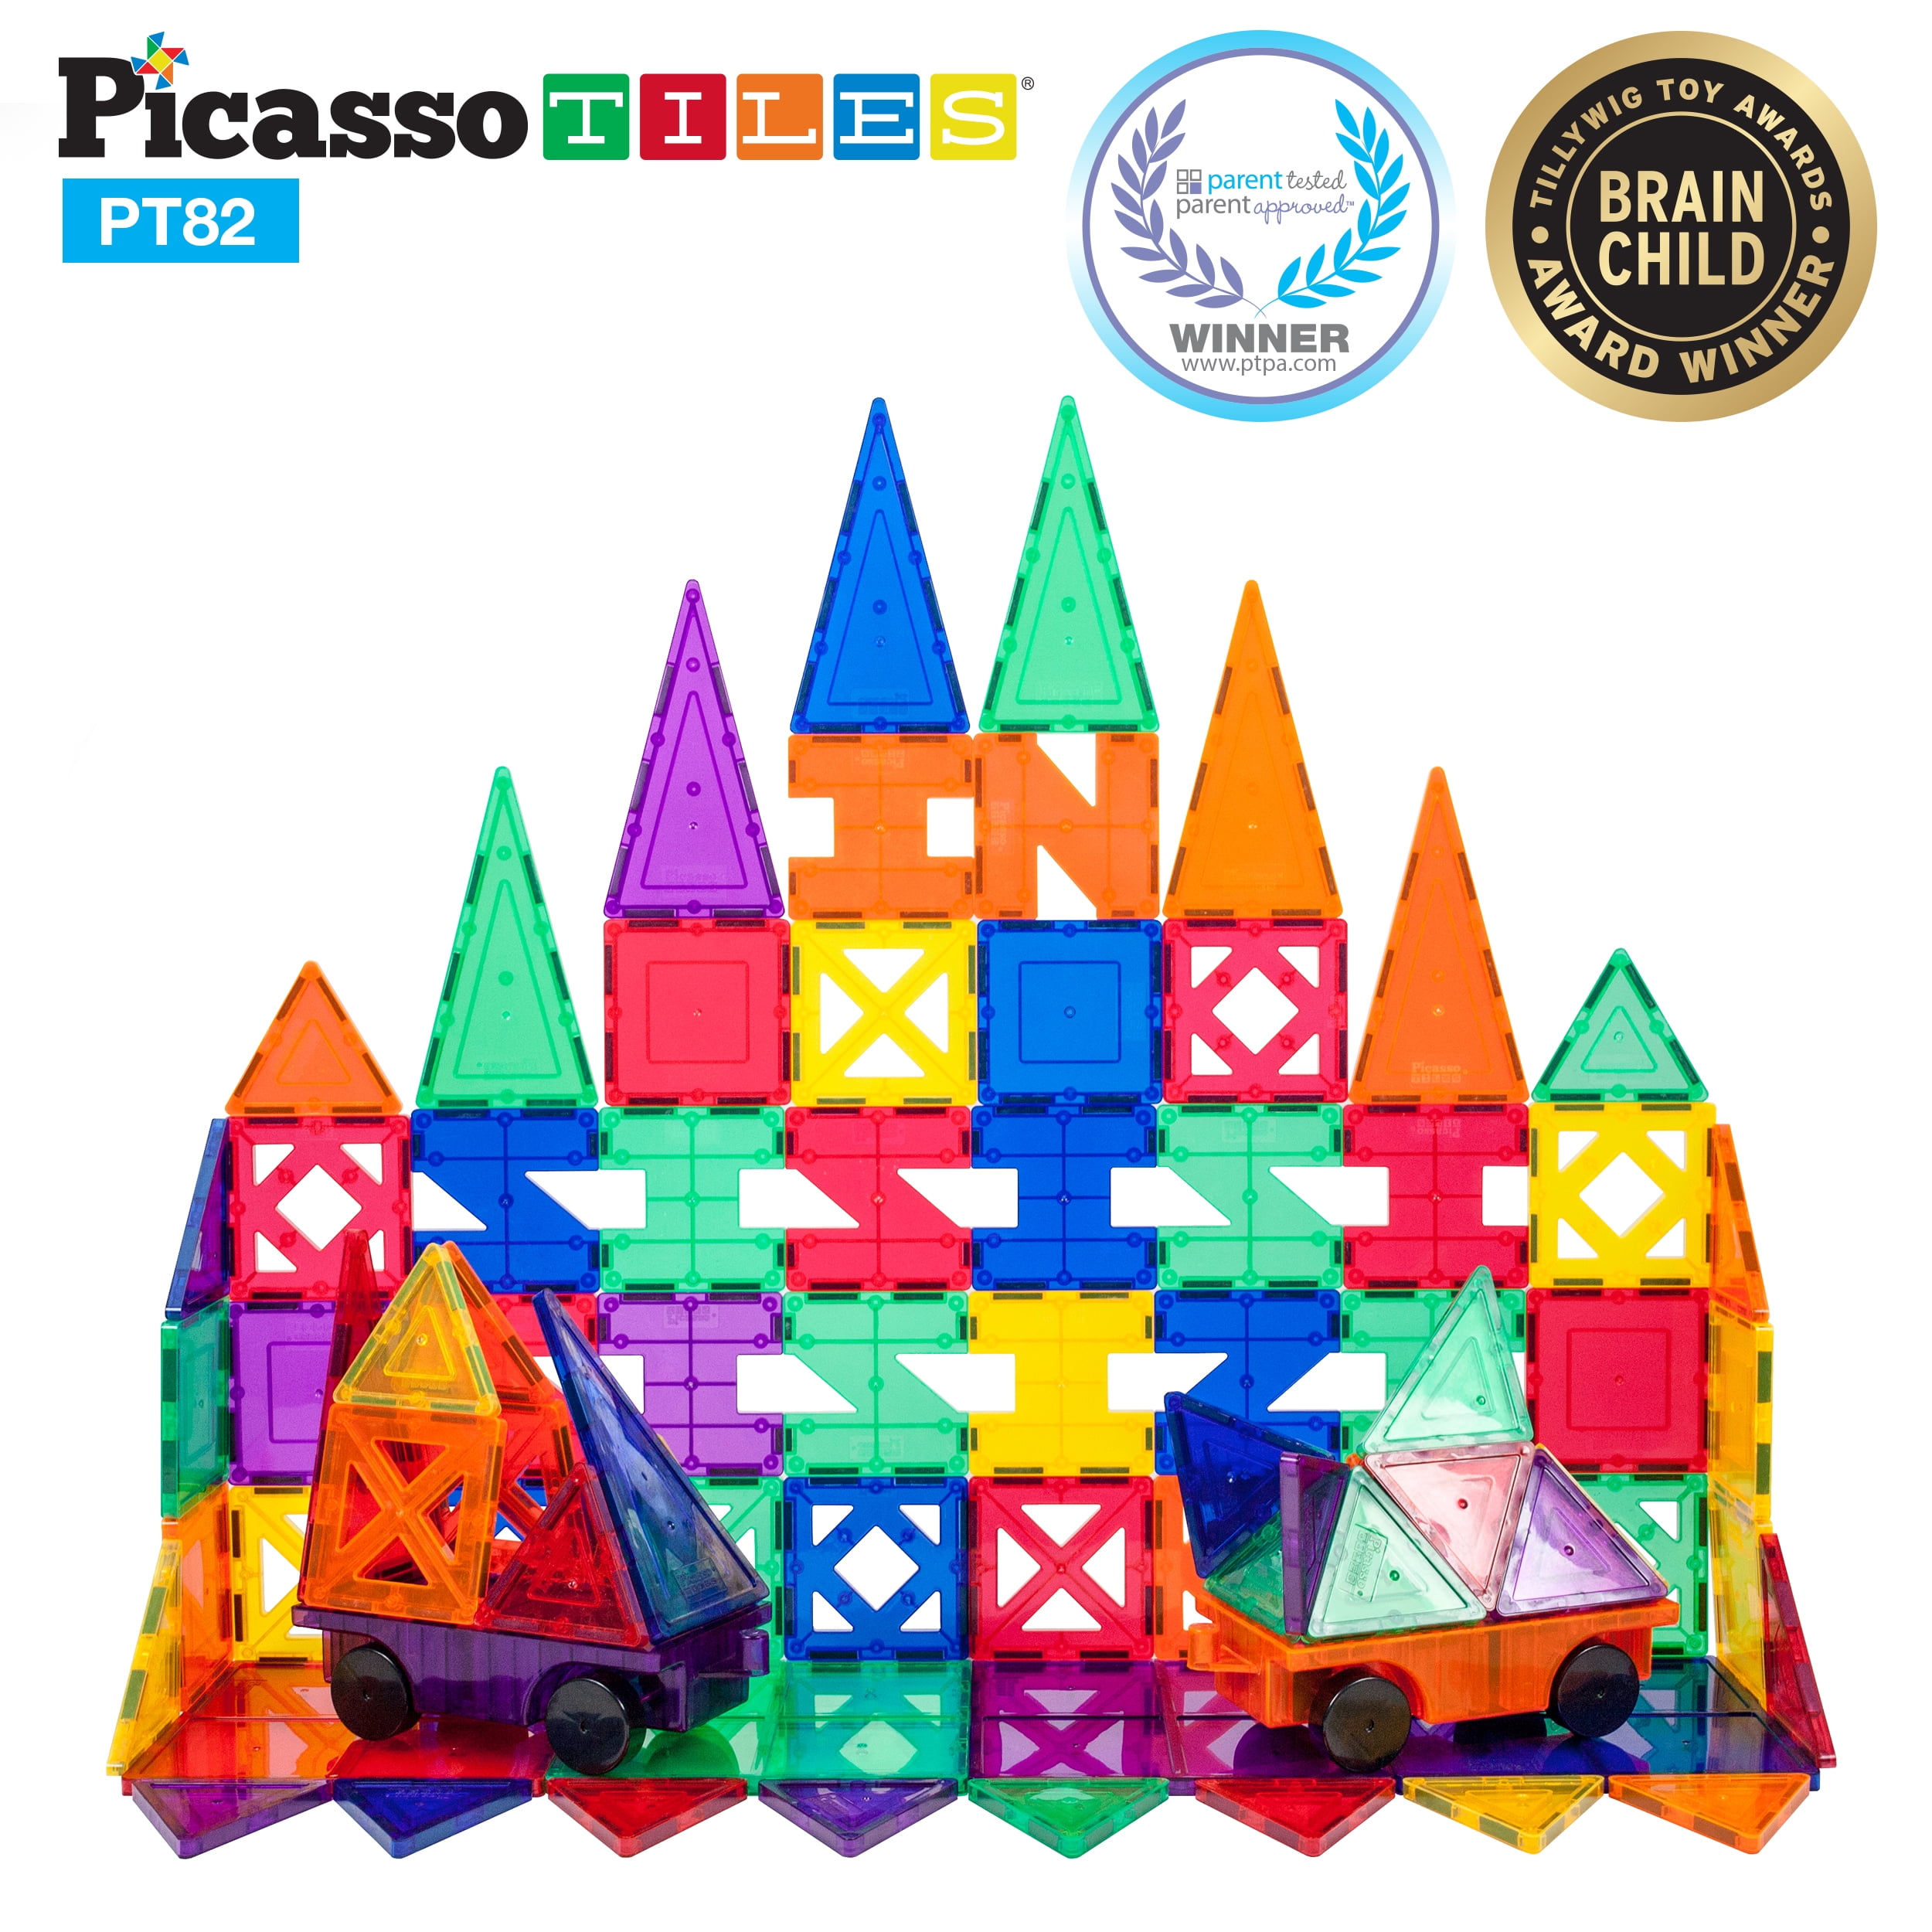 100 Piece for sale online PicassoTiles PT100 Magnet Building Tiles Set 